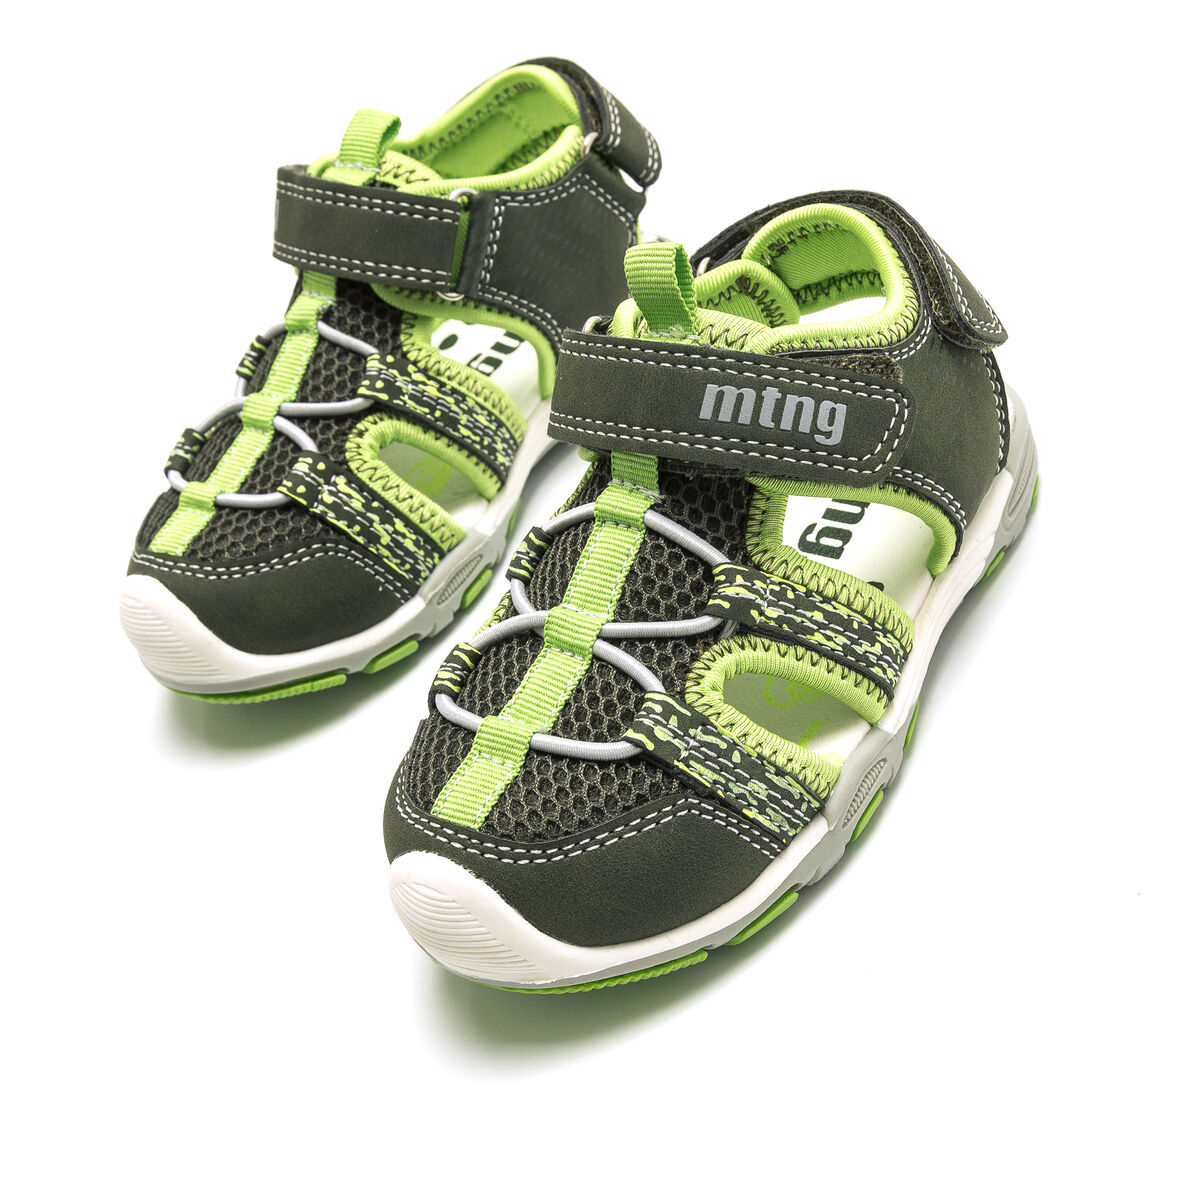 Sandalias de Nino modelo RIVER de MTNG image number 4